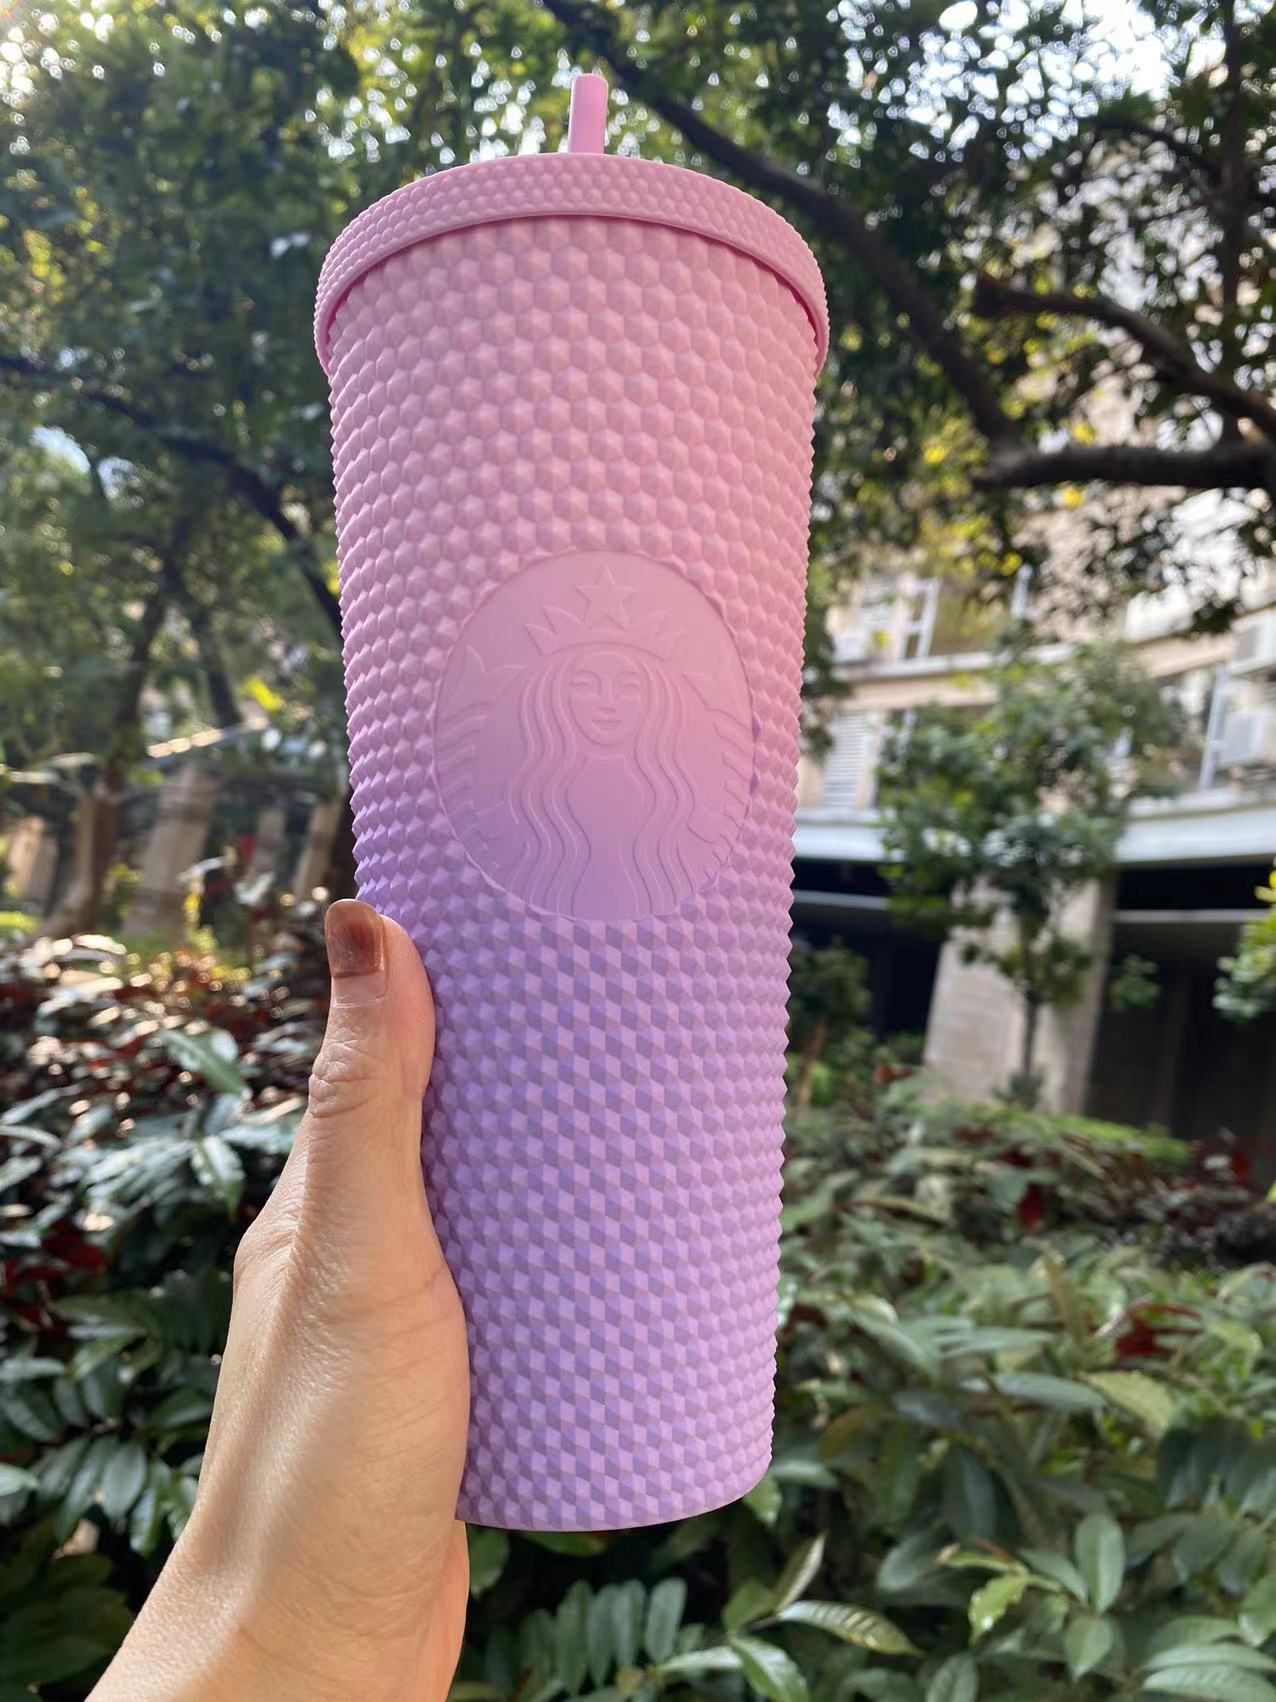 NWT Starbucks Wave Tumbler in Pink & Purple So - Depop